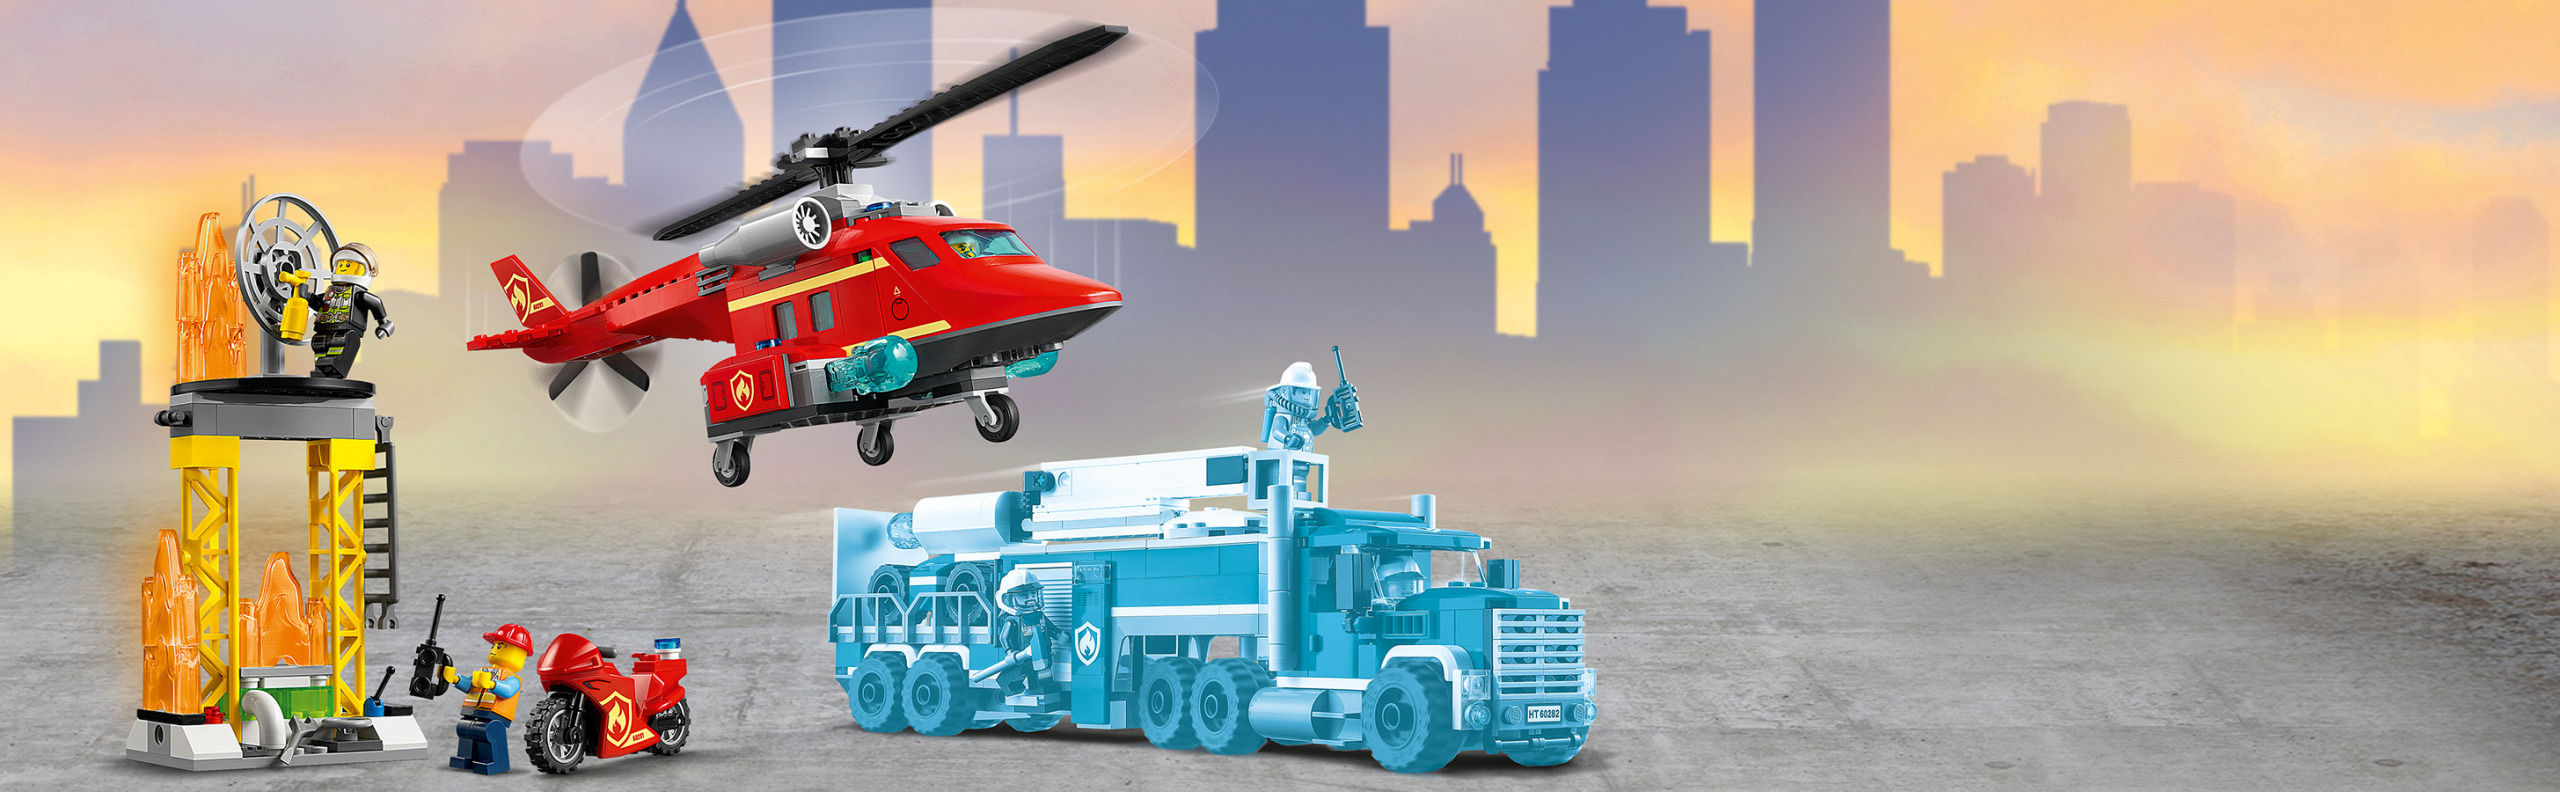 LEGO CITY - Helicóptero de Resgate dos Bombeiros- 60281